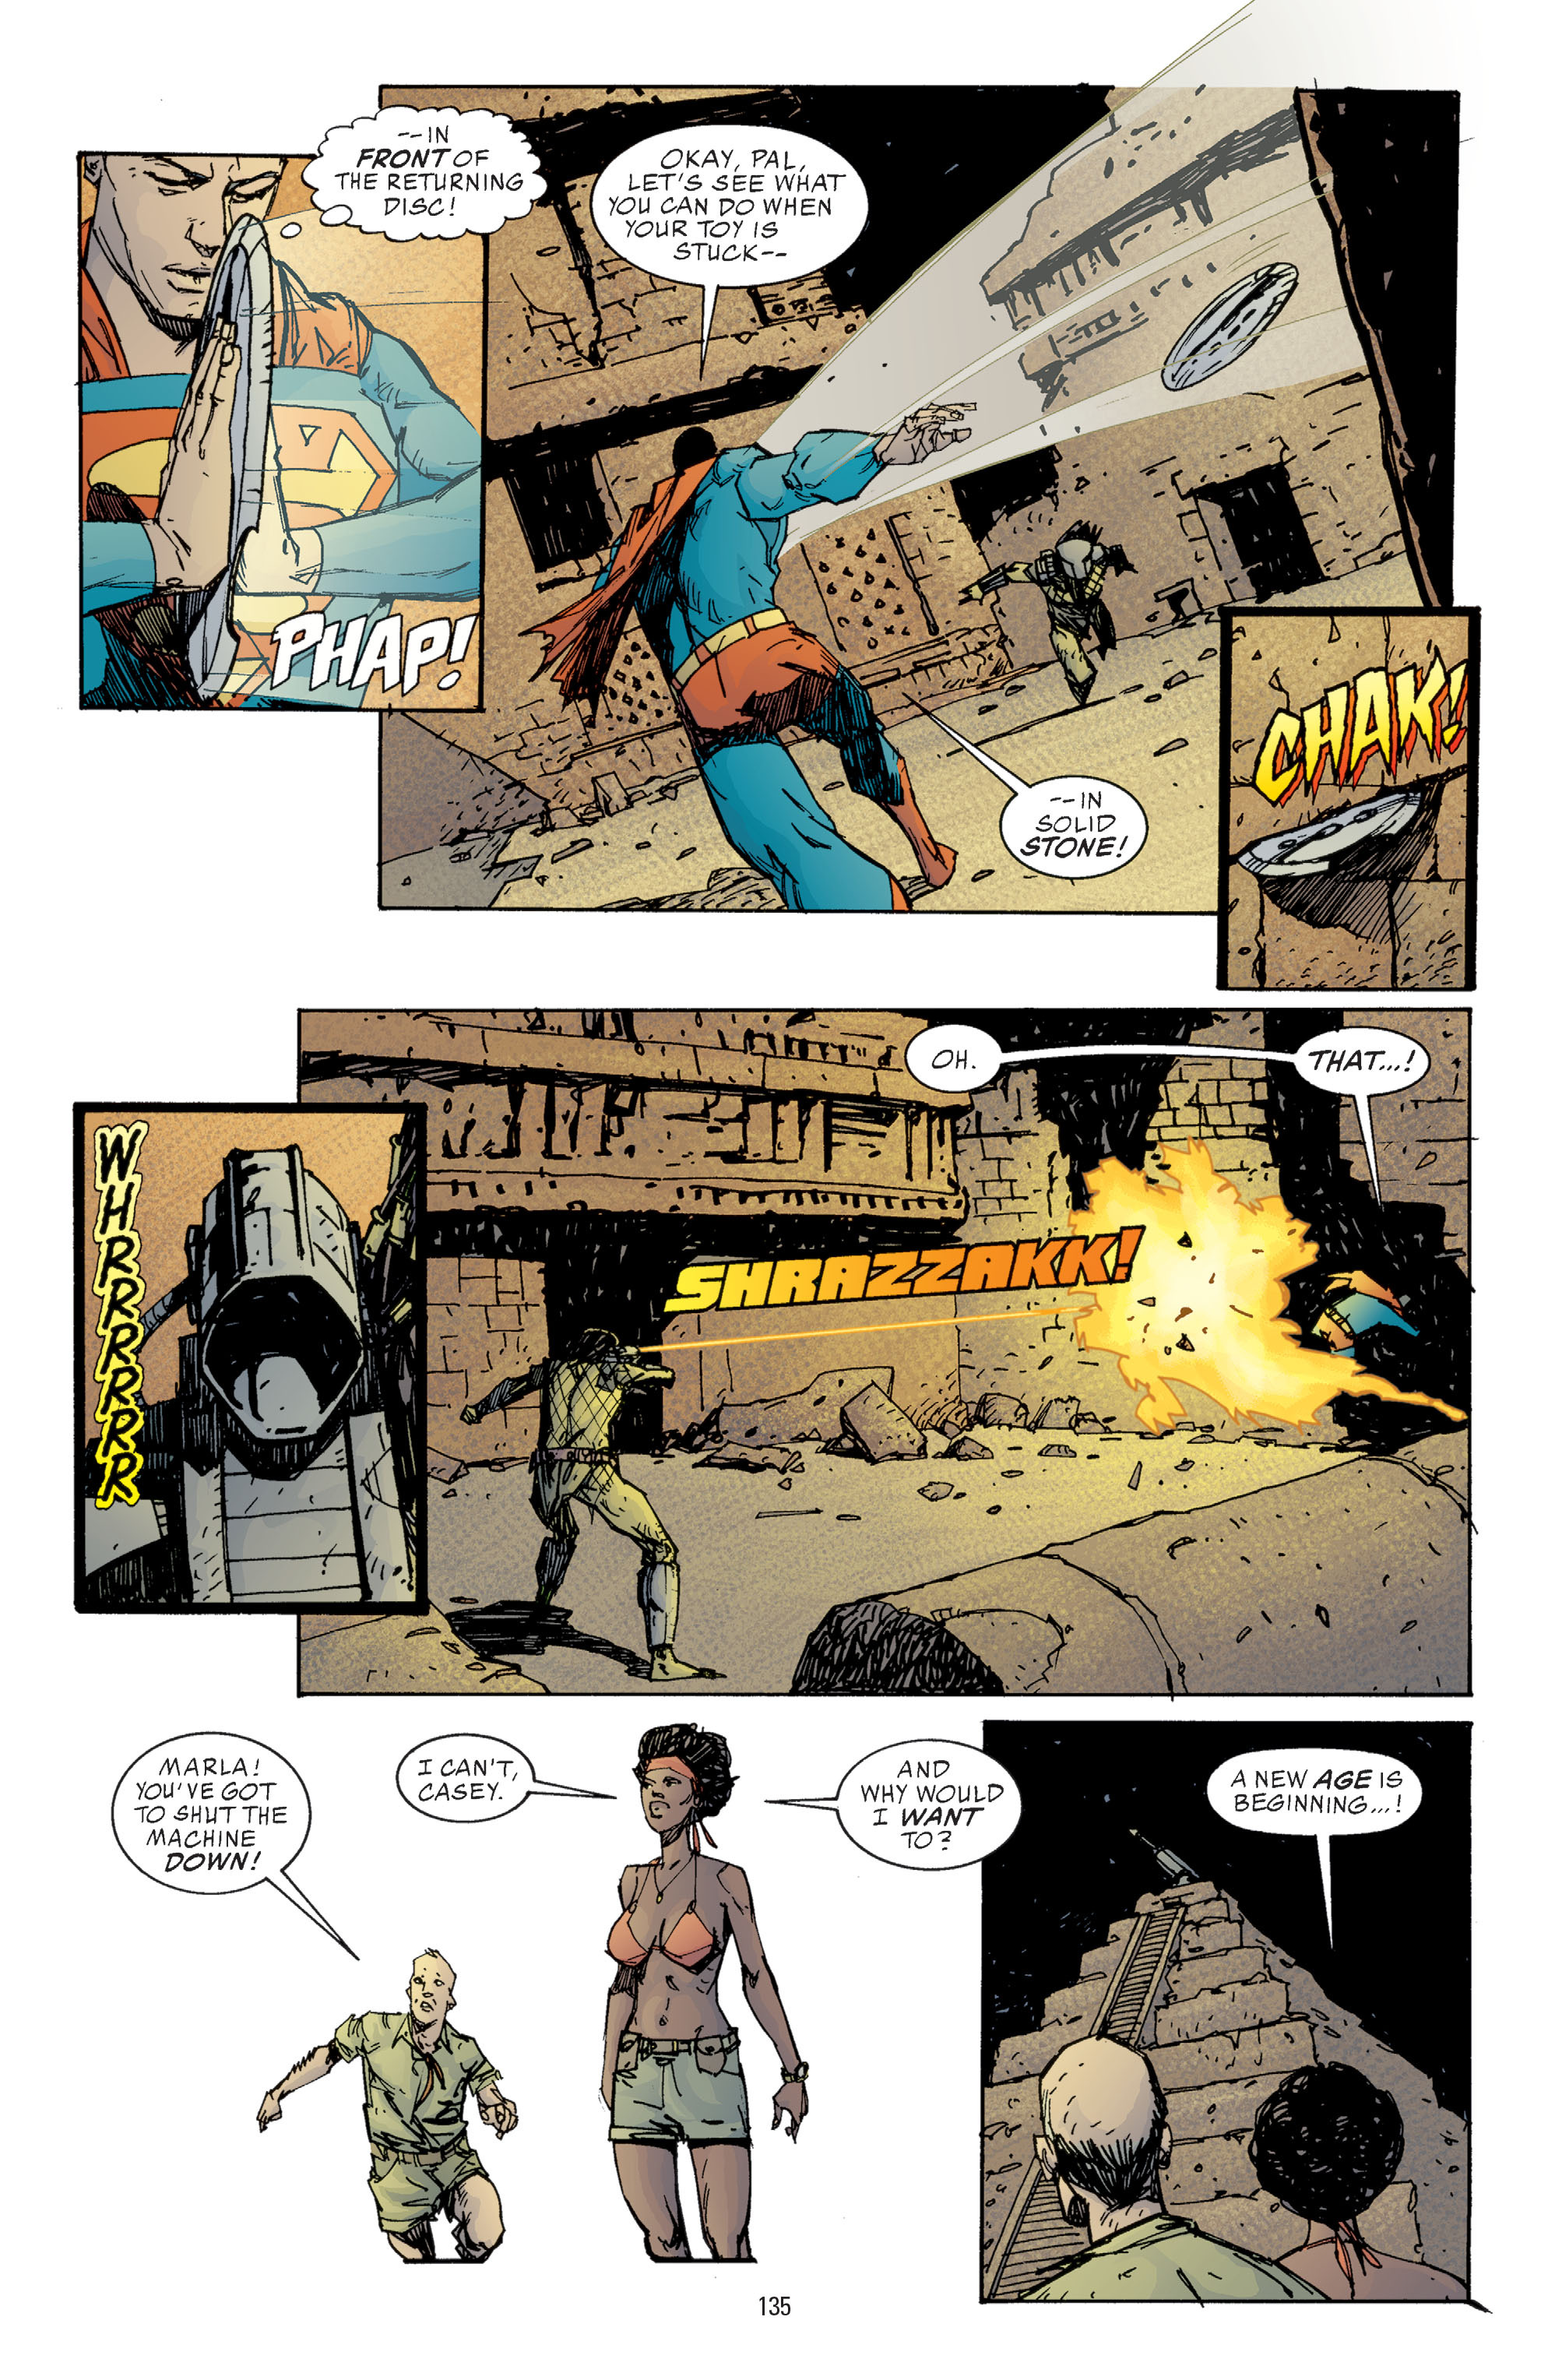 DC Comics/Dark Horse Comics: Justice League Full #1 - English 133